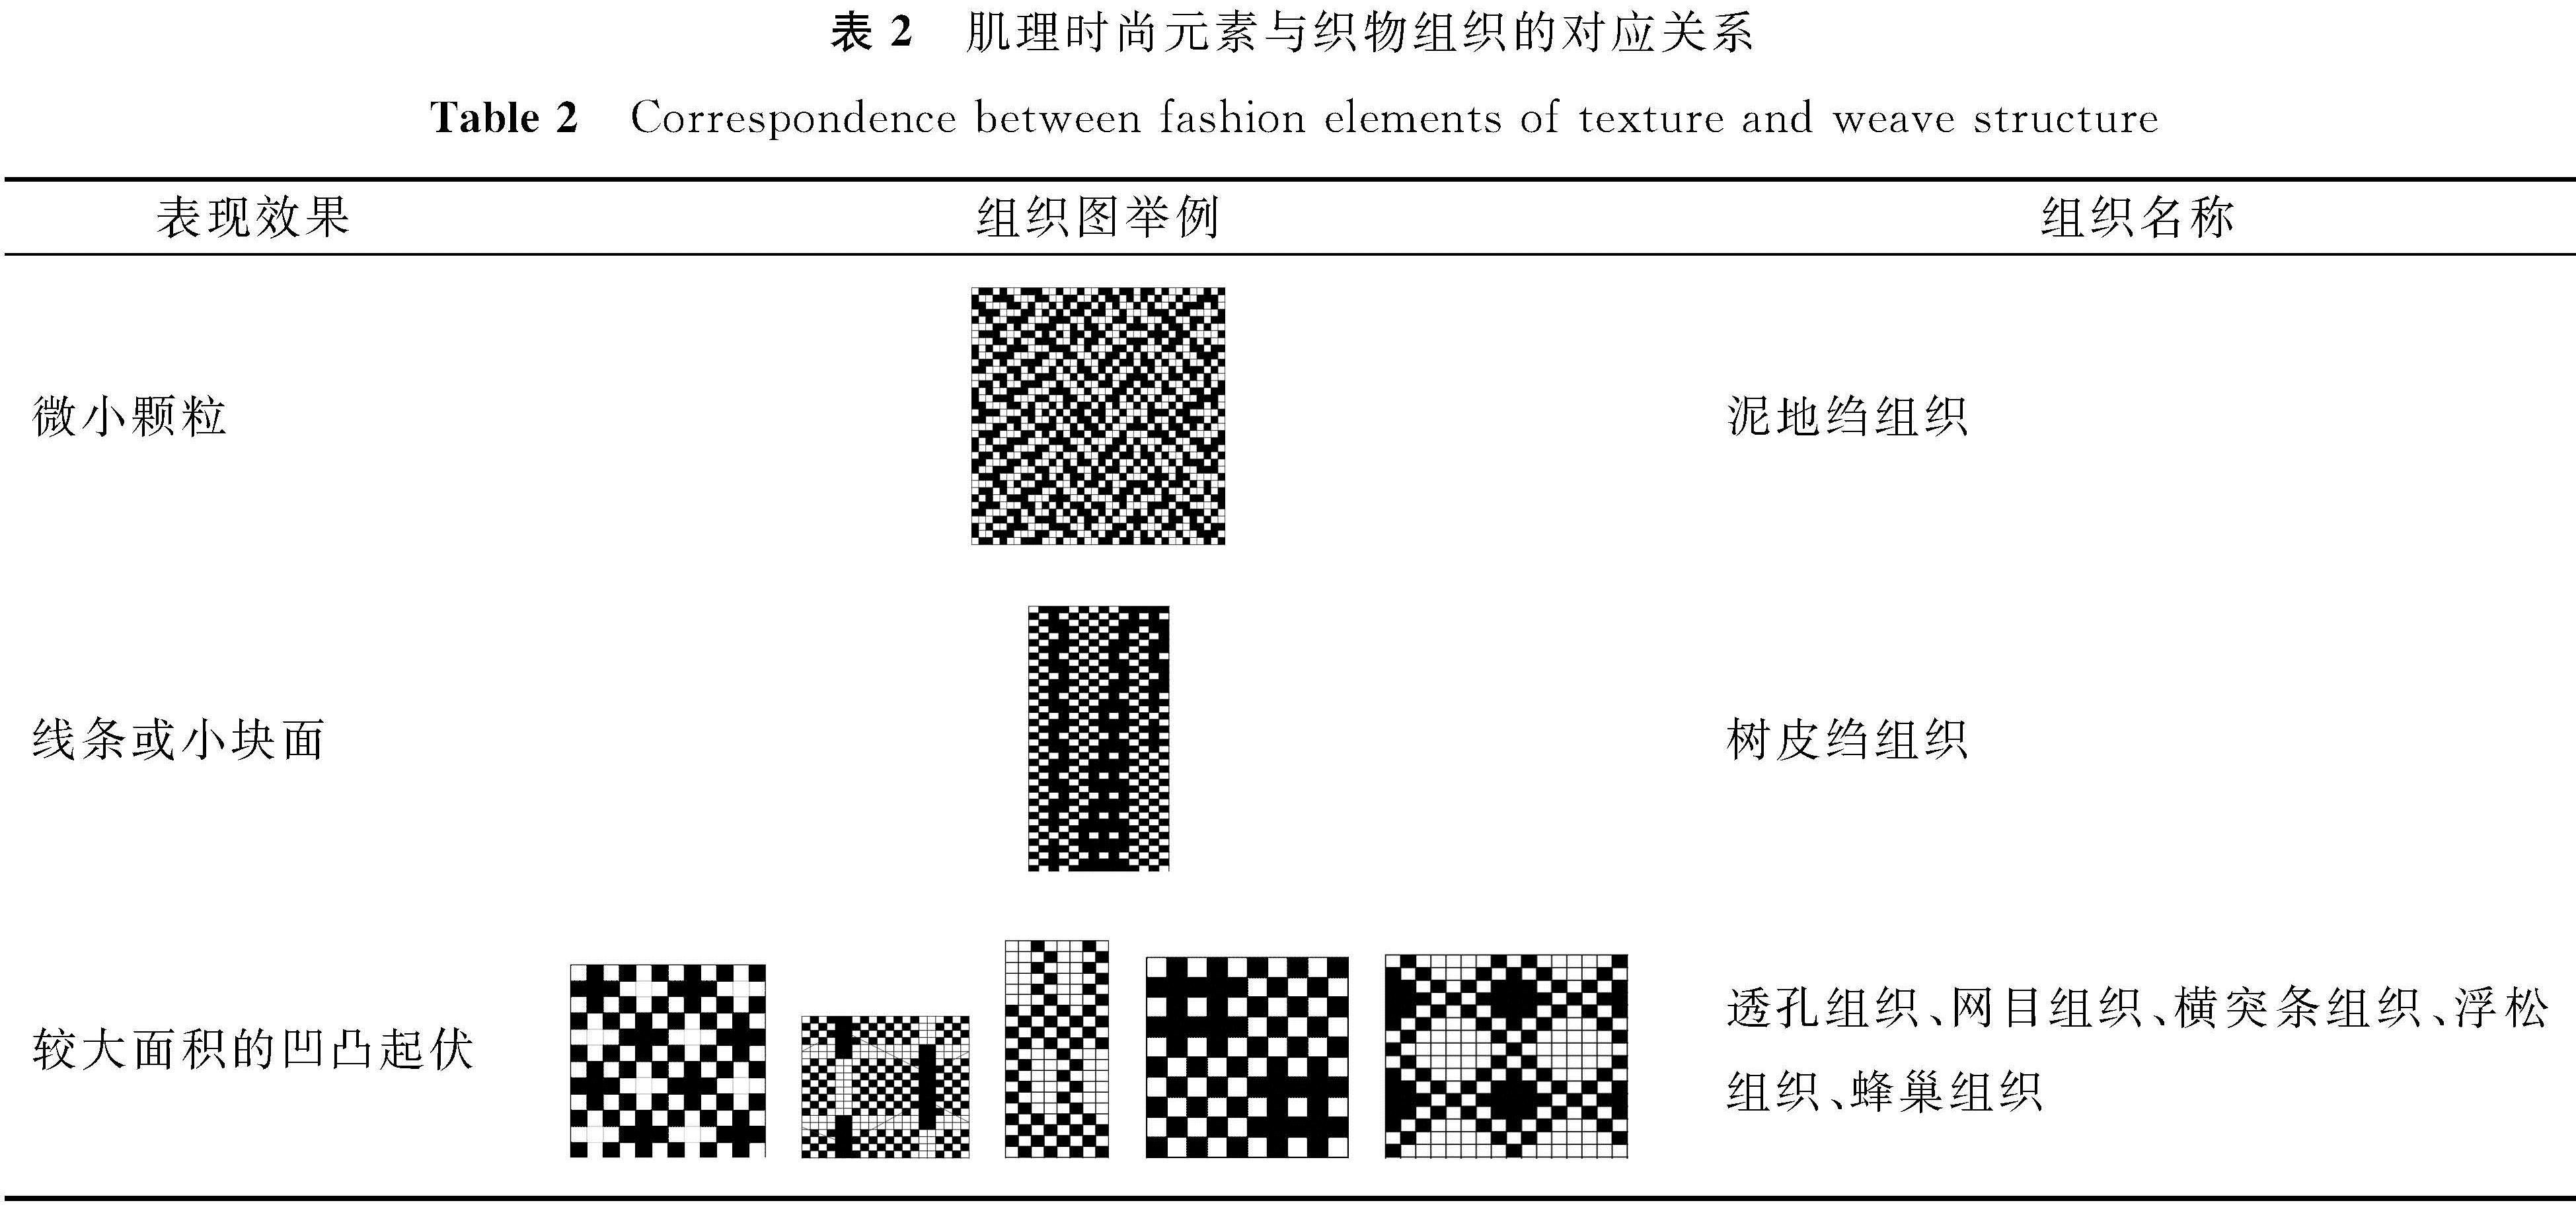 表2 肌理时尚元素与织物组织的对应关系<br/>Table 2 Correspondence between fashion elements of texture and weave structure